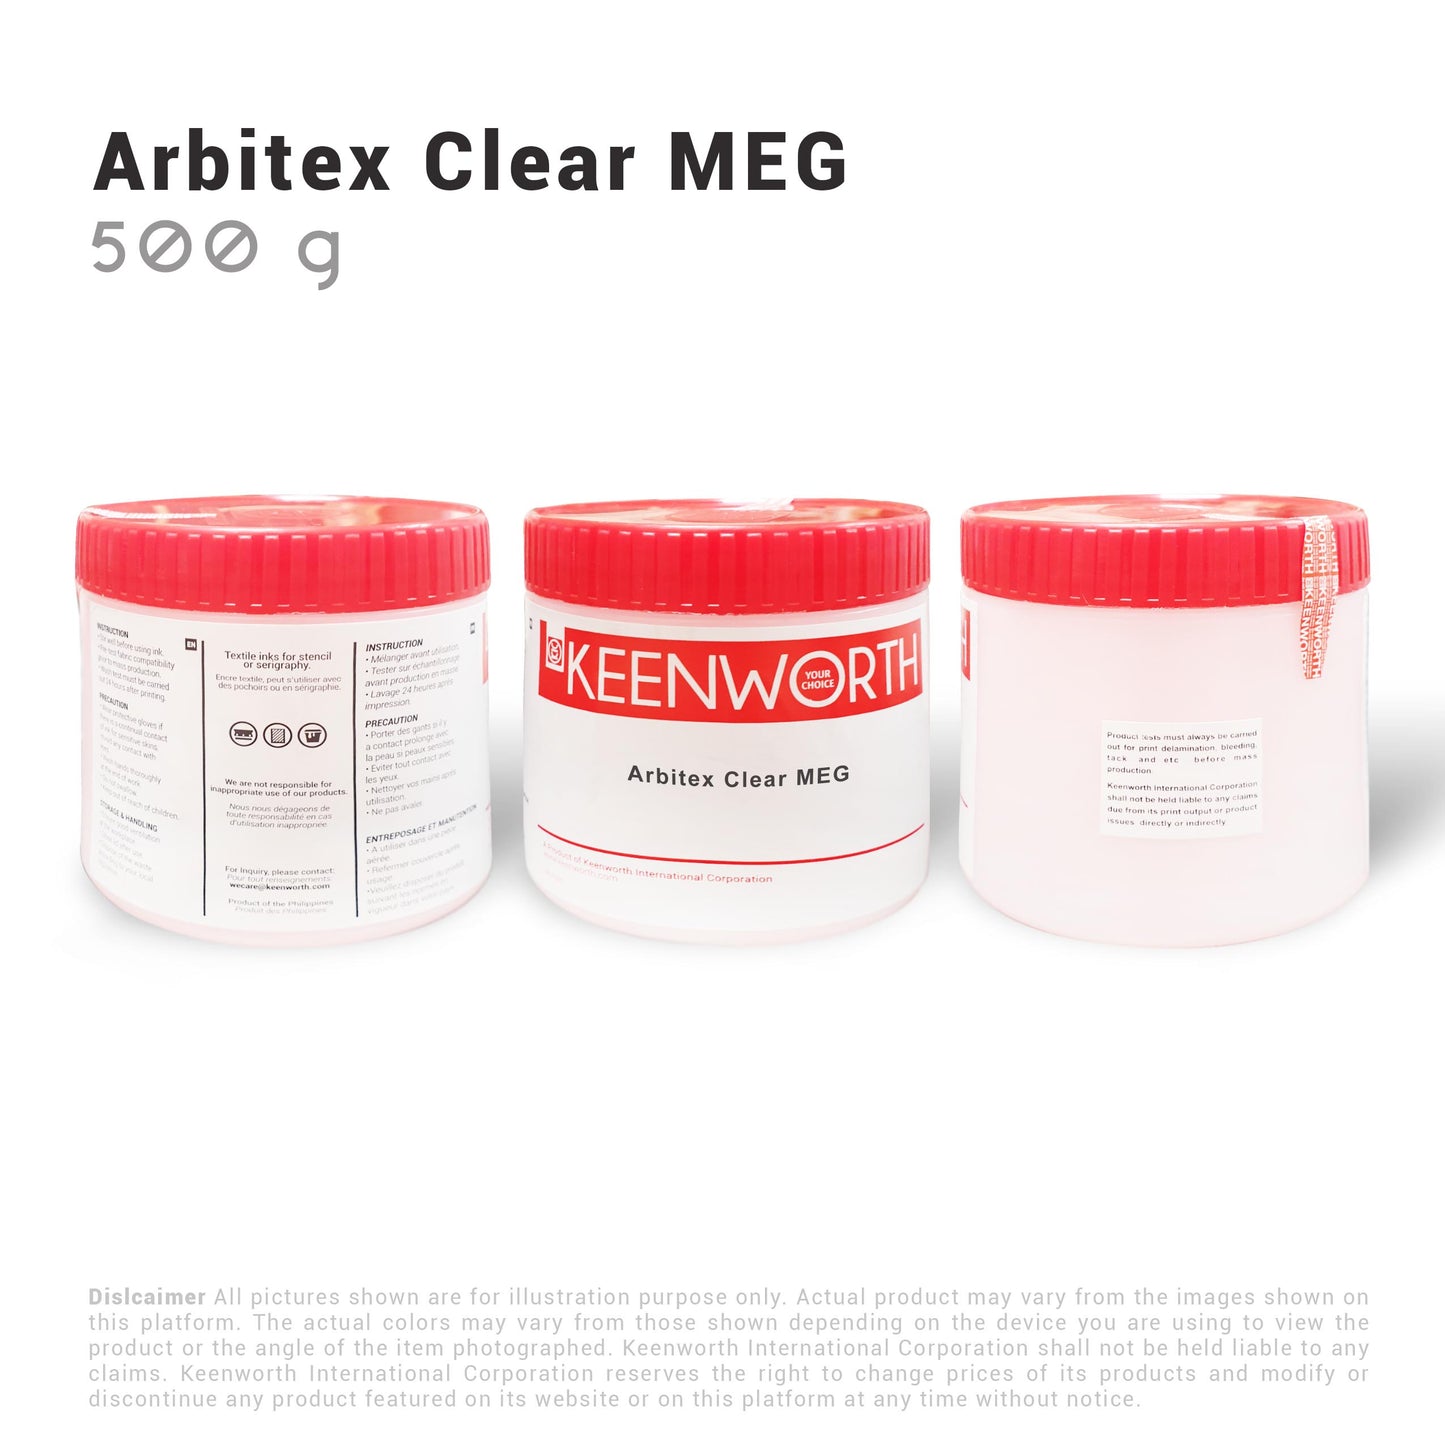 Arbitex Clear MEG